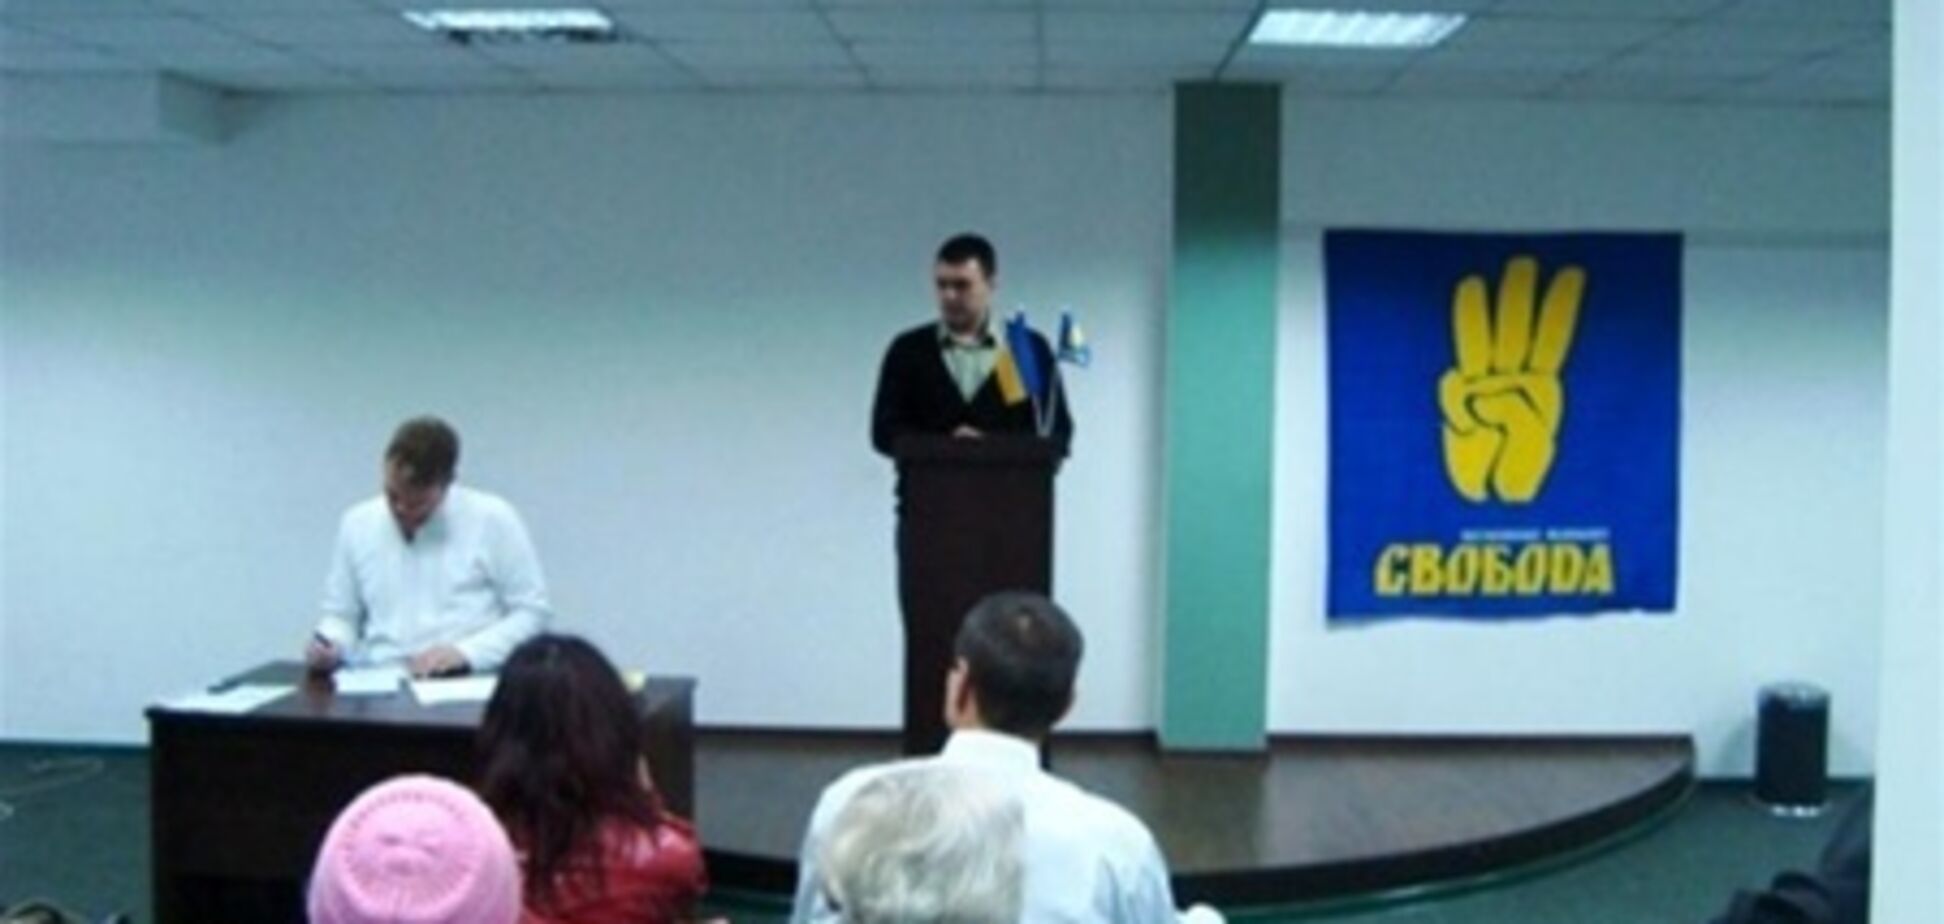 Арестован глава луганской областной 'Свободы'